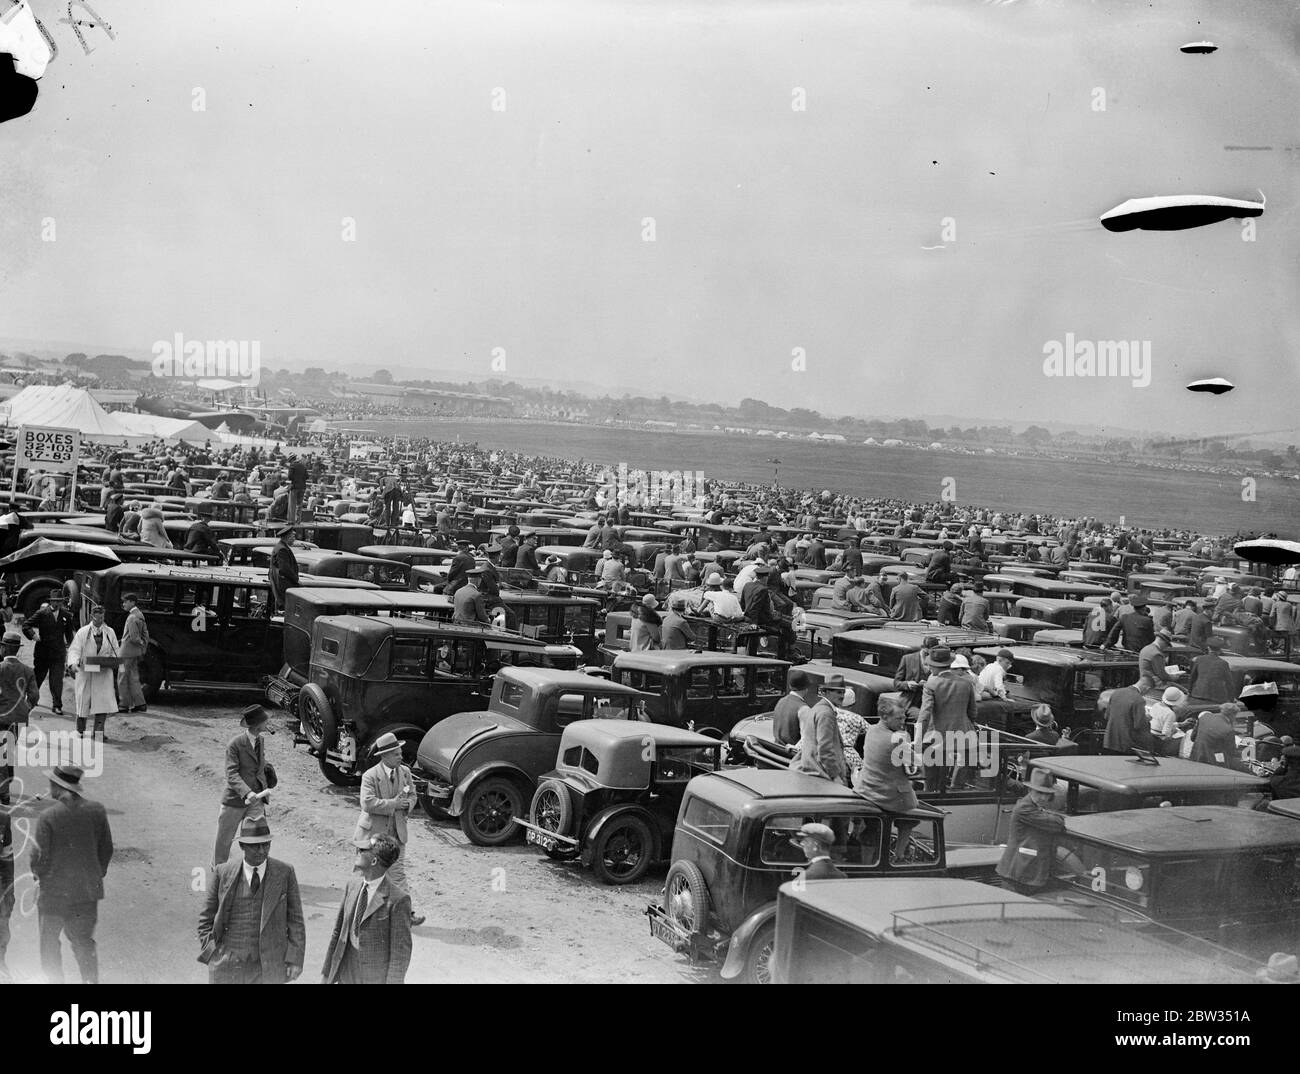 Autos als Tribünen bei Hendon Air Pageant. Tausende nutzten ihre Autos als Tribünen, um die wunderbare Ausstellung akrobatischer Flugreisen der Royal Air Force auf der Hendon Air Pageant am Hendon Aerodrome zu beobachten. Tausende beobachten den Festzug von ihren Autos in Hendon. 25 Juni 1932 Stockfoto